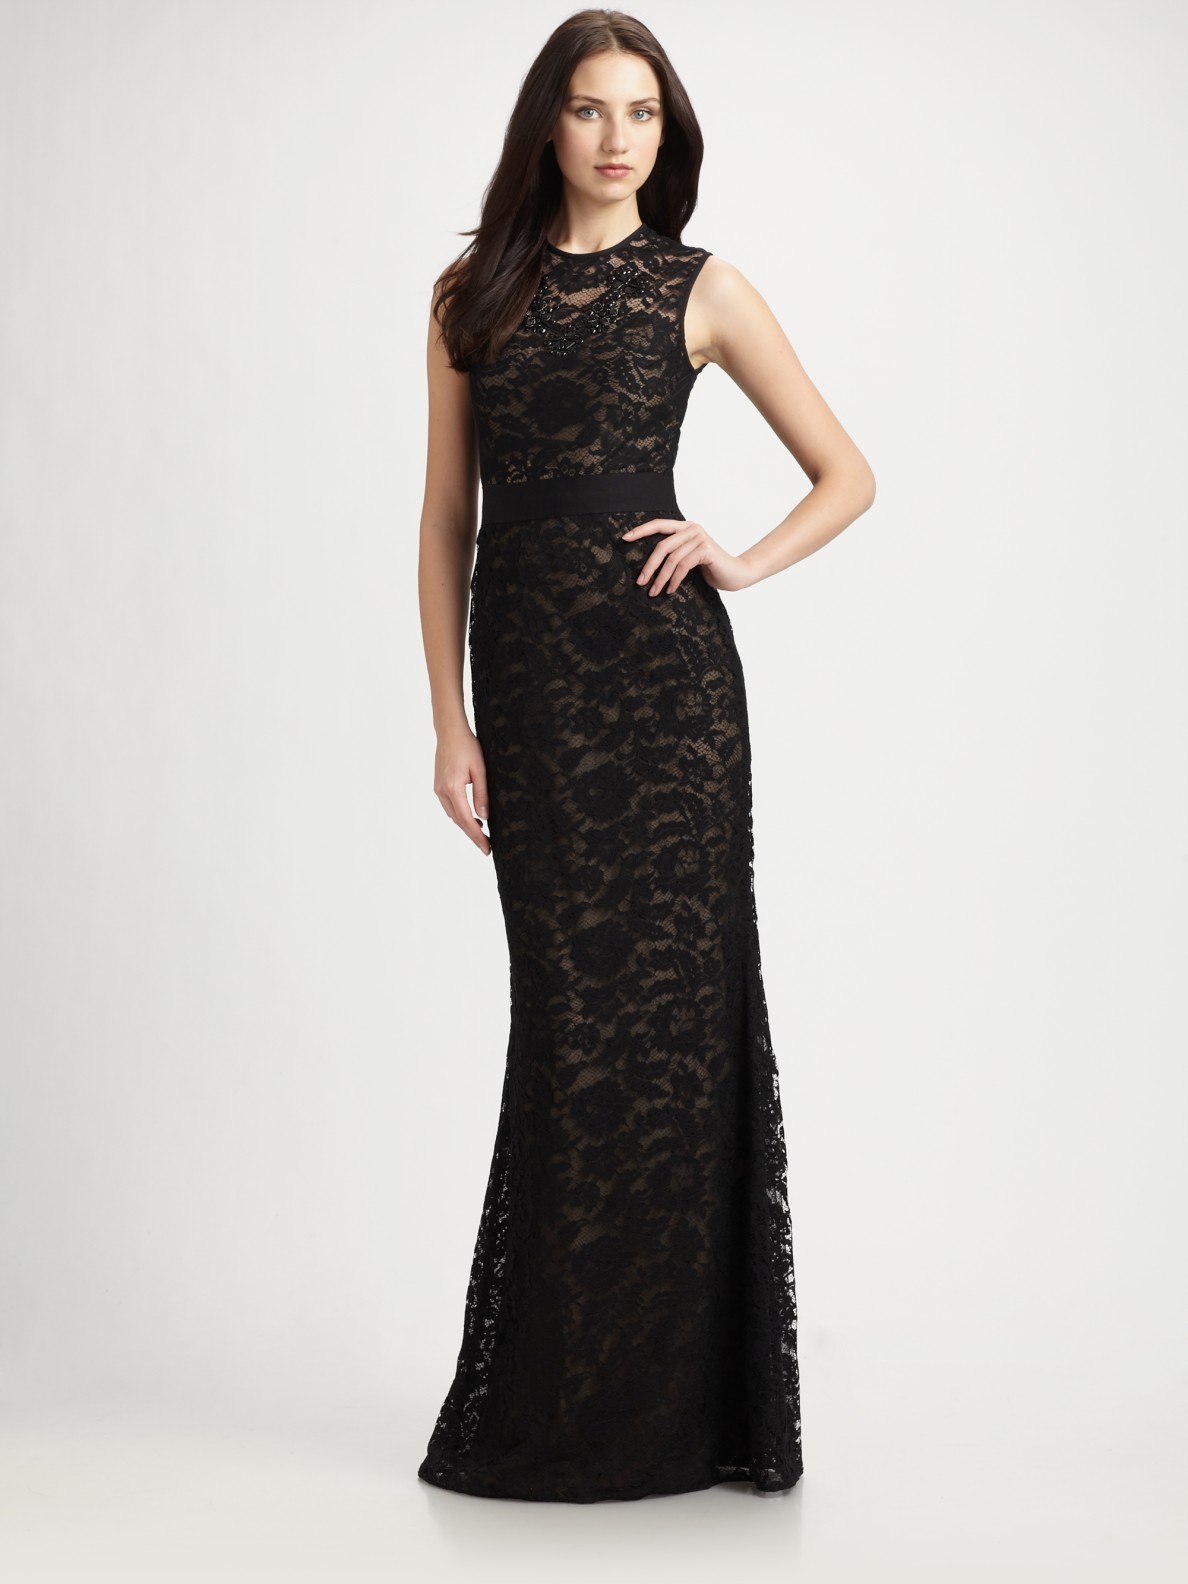 Ml monique lhuillier Lace Gown in Black | Lyst